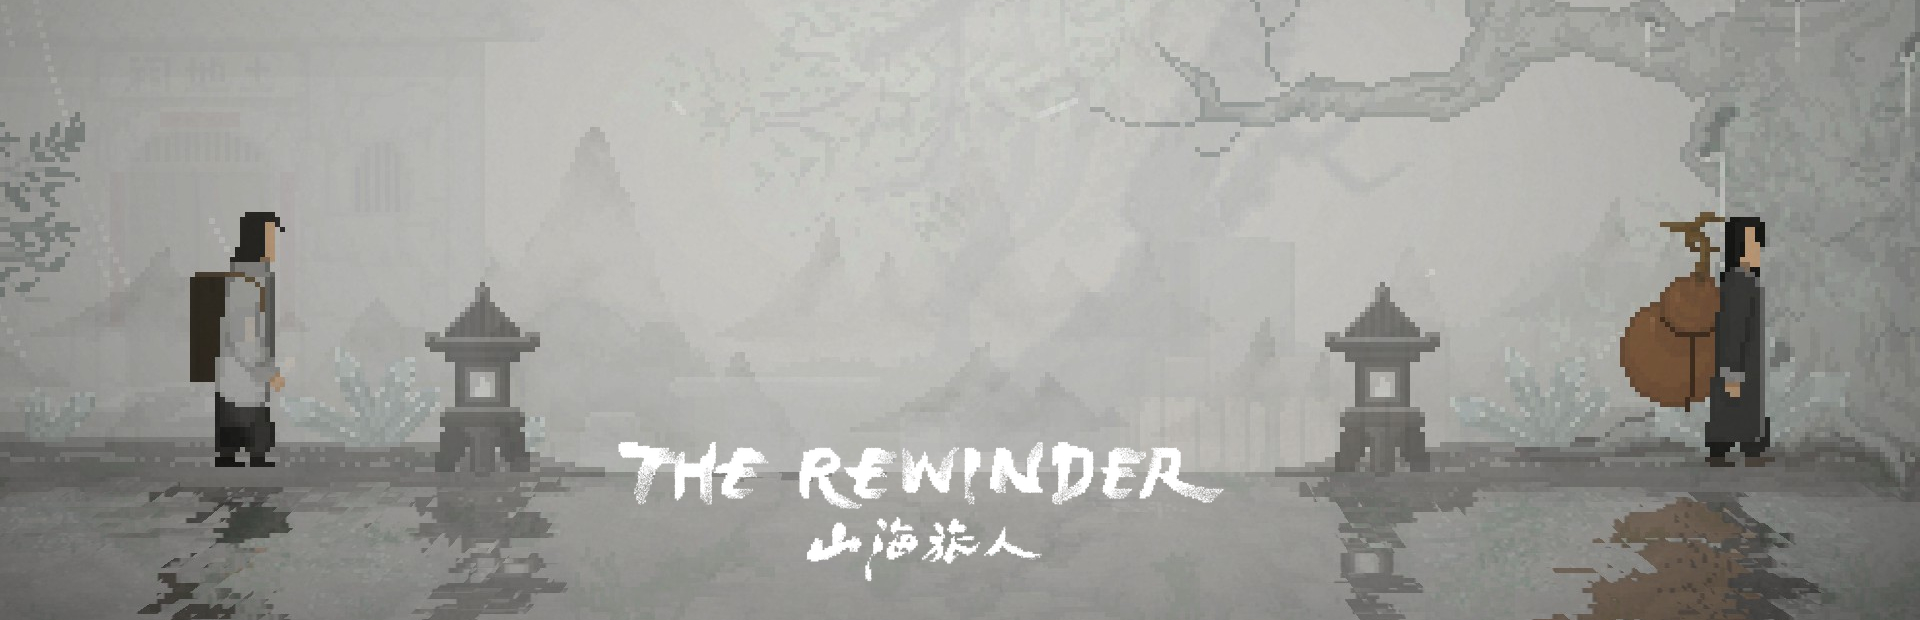 دانلود بازی The Rewinder برای PC | گیمباتو